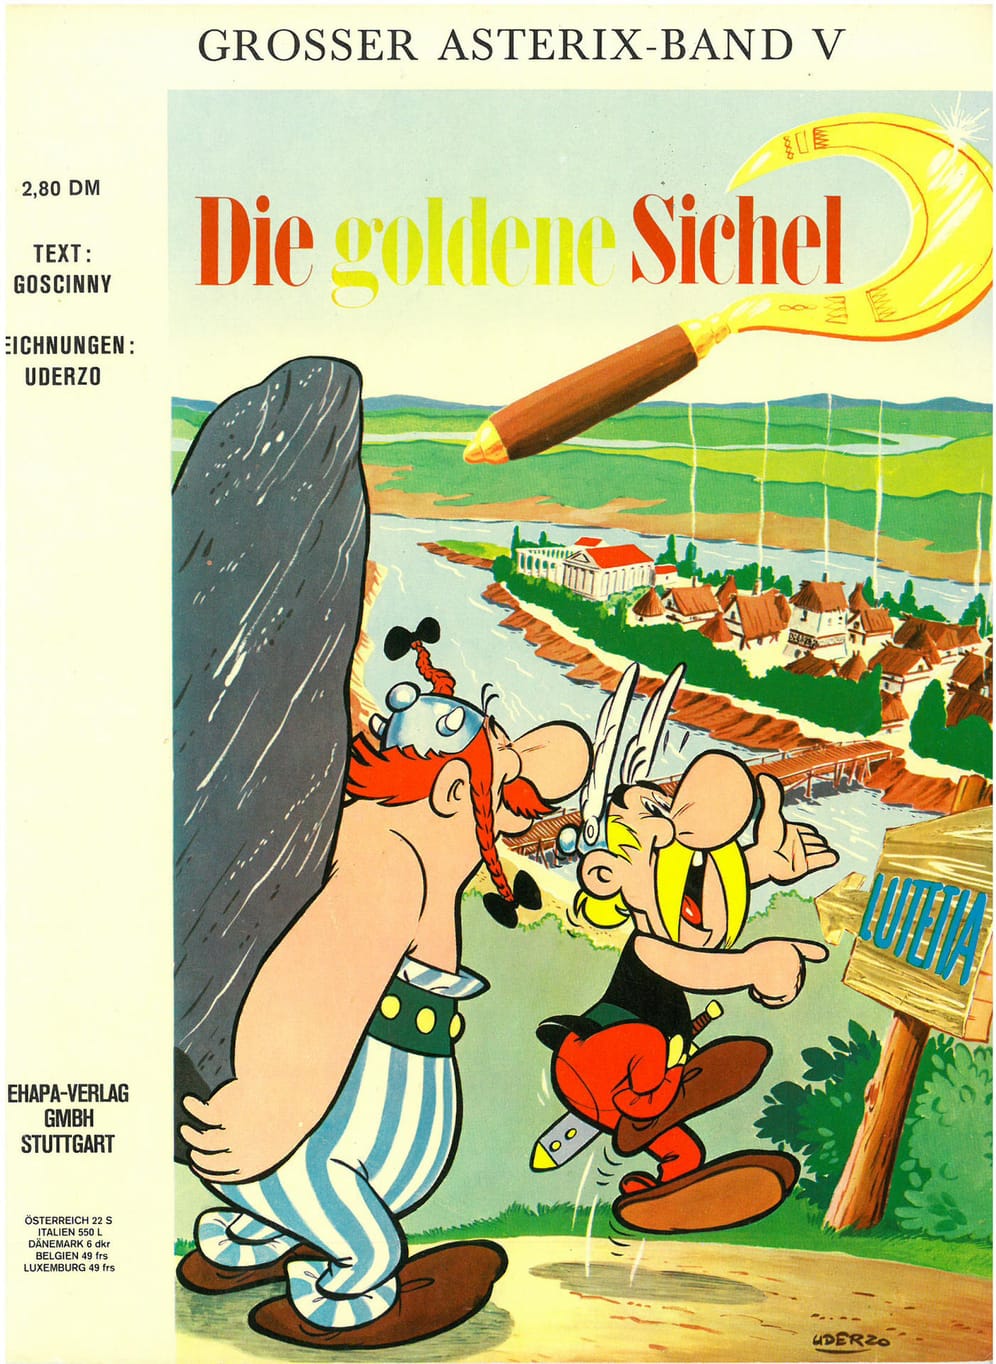 Die fünfte Ausgabe: Asterix und die Goldene Sichel. Asterix und Obelix begeben sich hier auf eine aufregende Reise, um dem Druiden Miraculix eine neue Goldene Sichel zu beschaffen. Dies erweist sich schwieriger als gedacht.